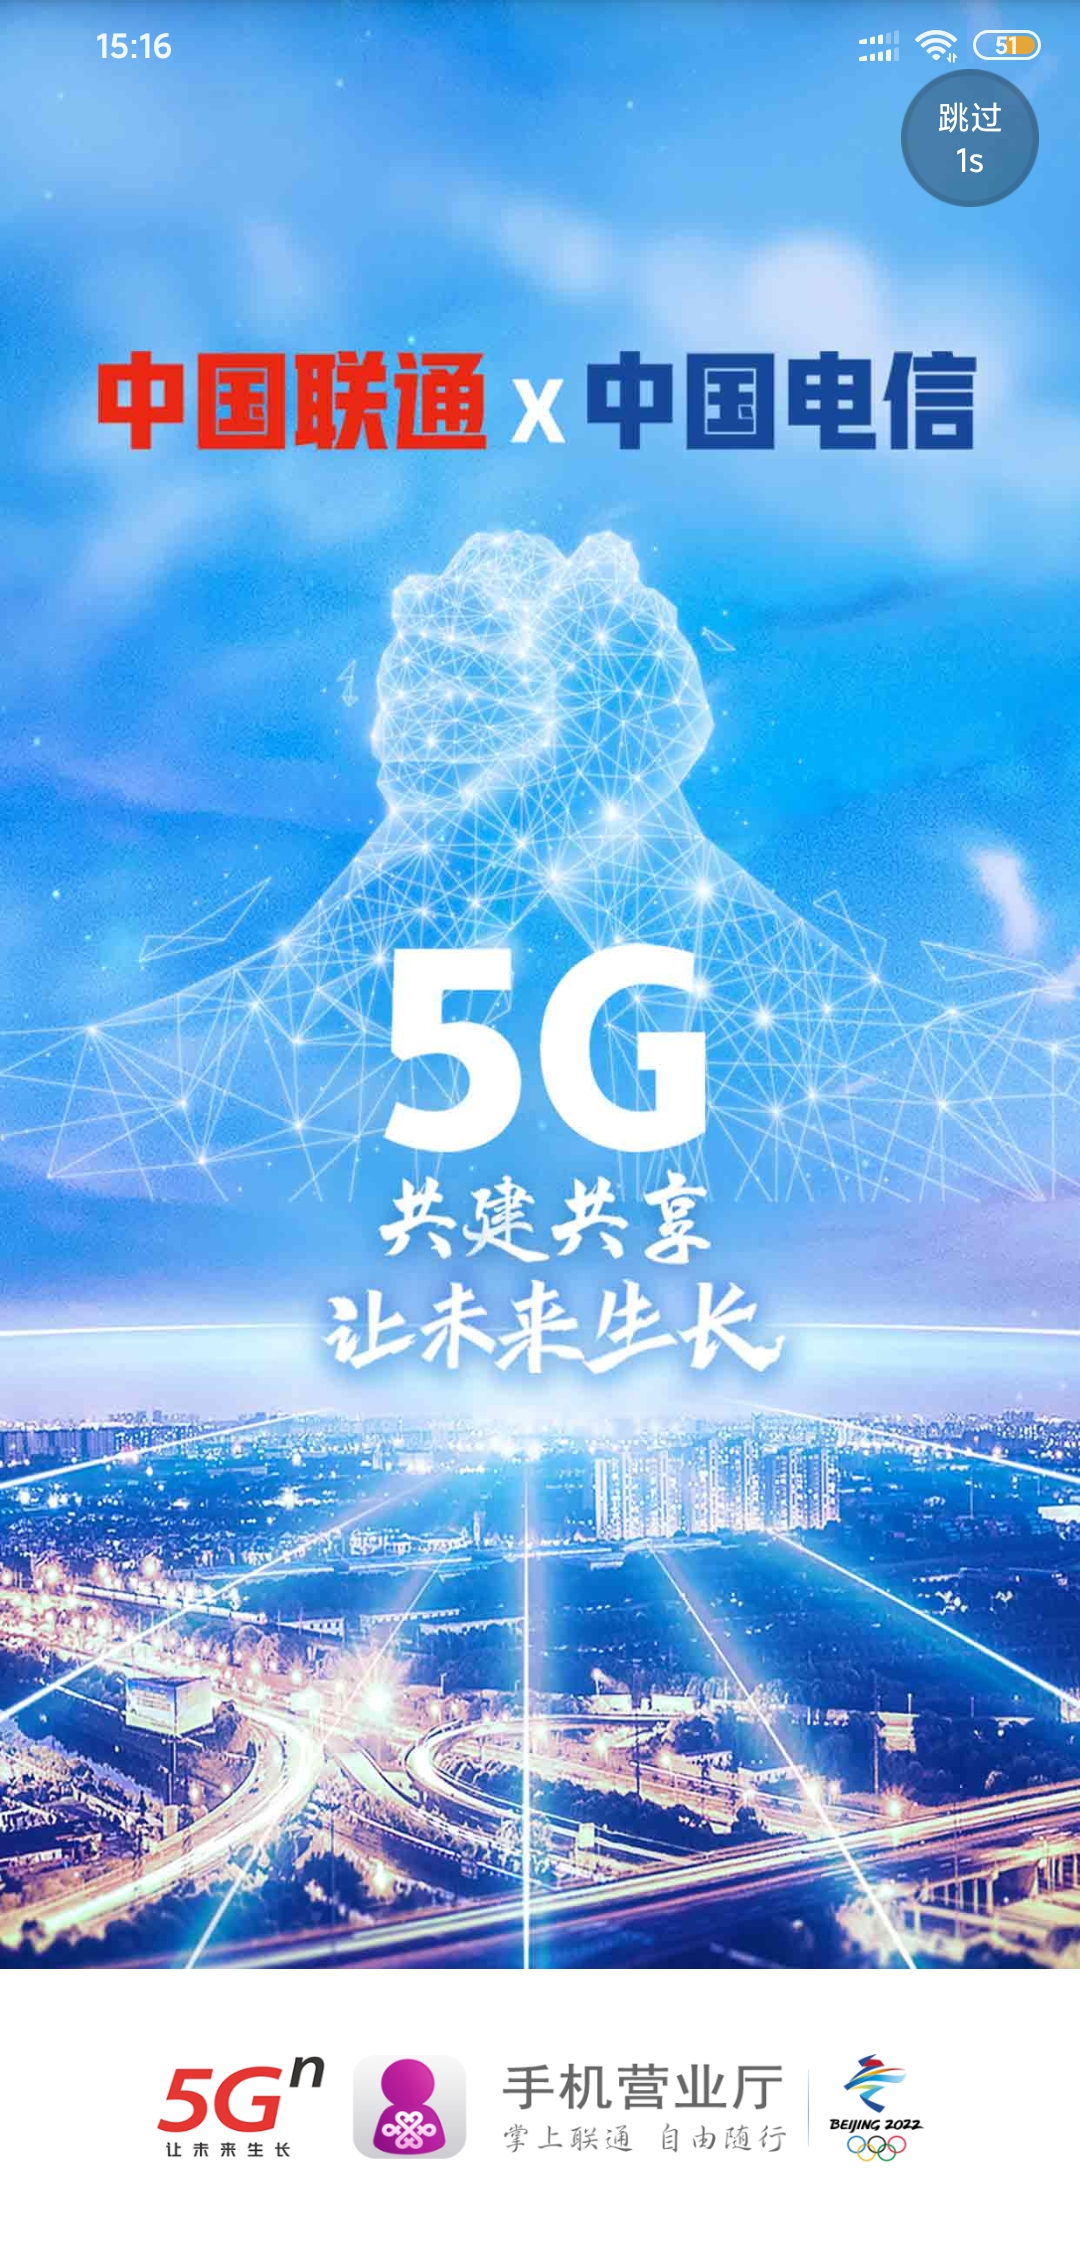 5G 技术在联通手机广告中的独特魅力与创新表现  第6张